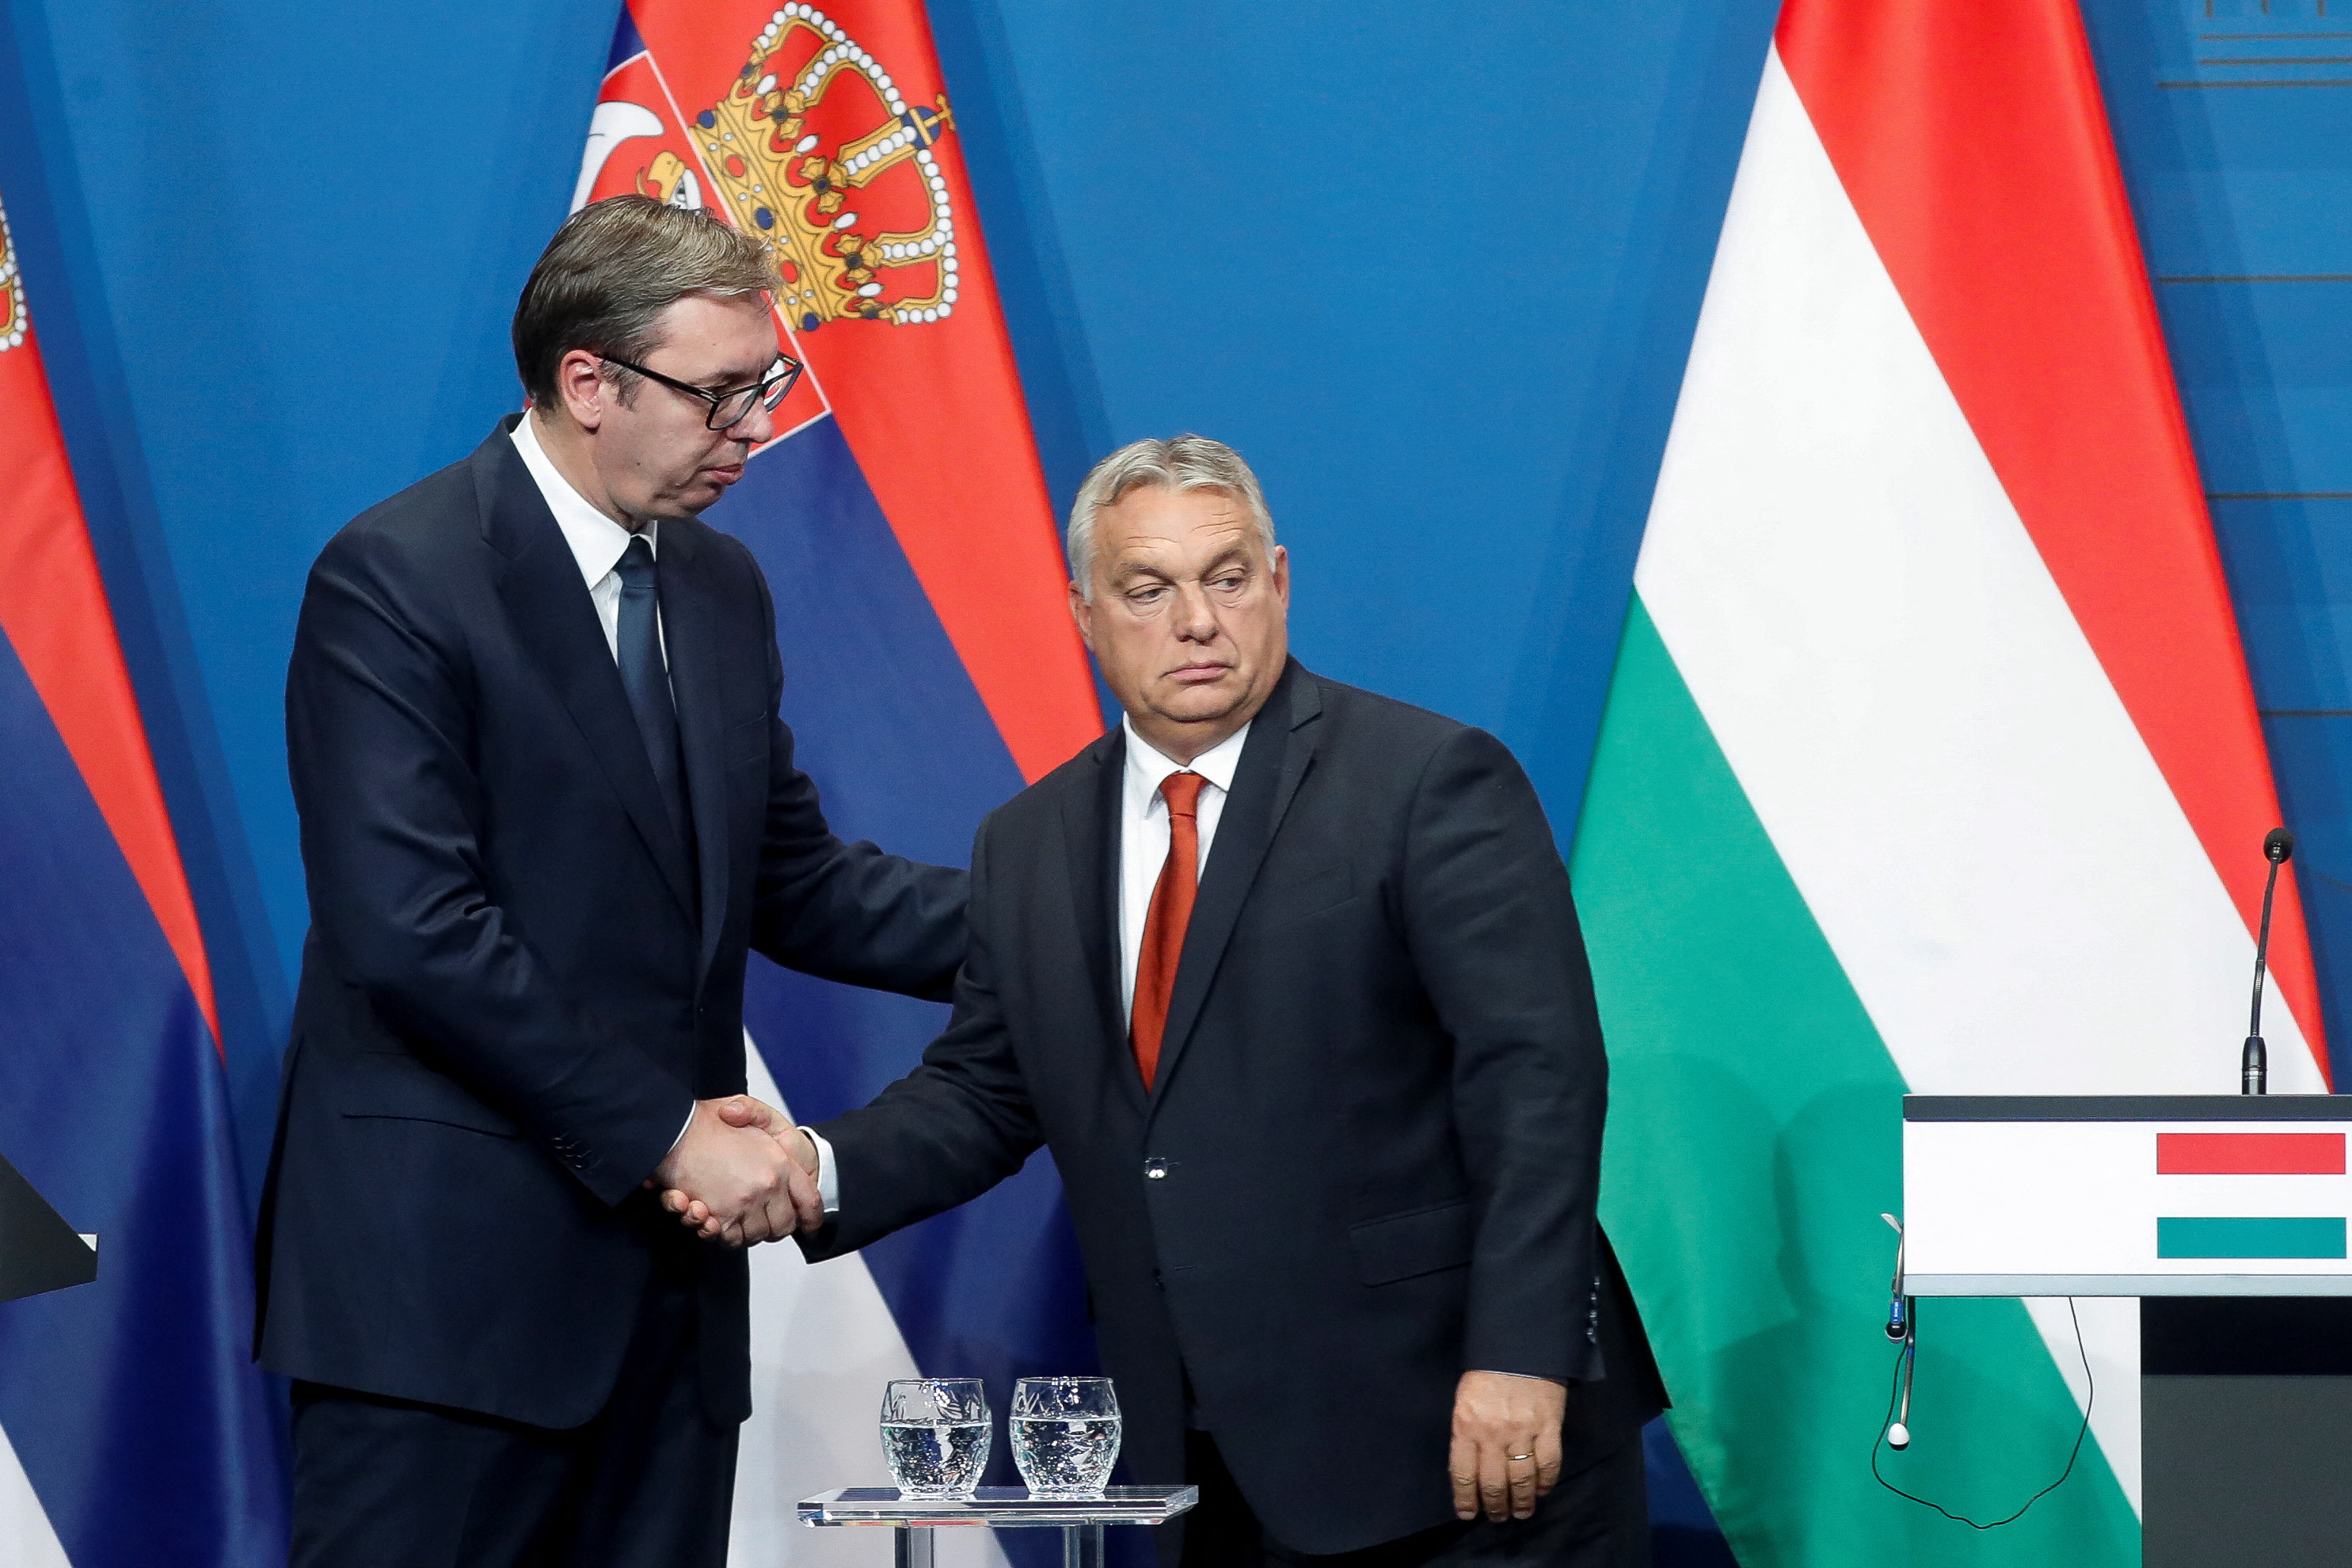 Tổng thống Vucic: Mỹ từng thúc giục Hungary xâm lược Serbia